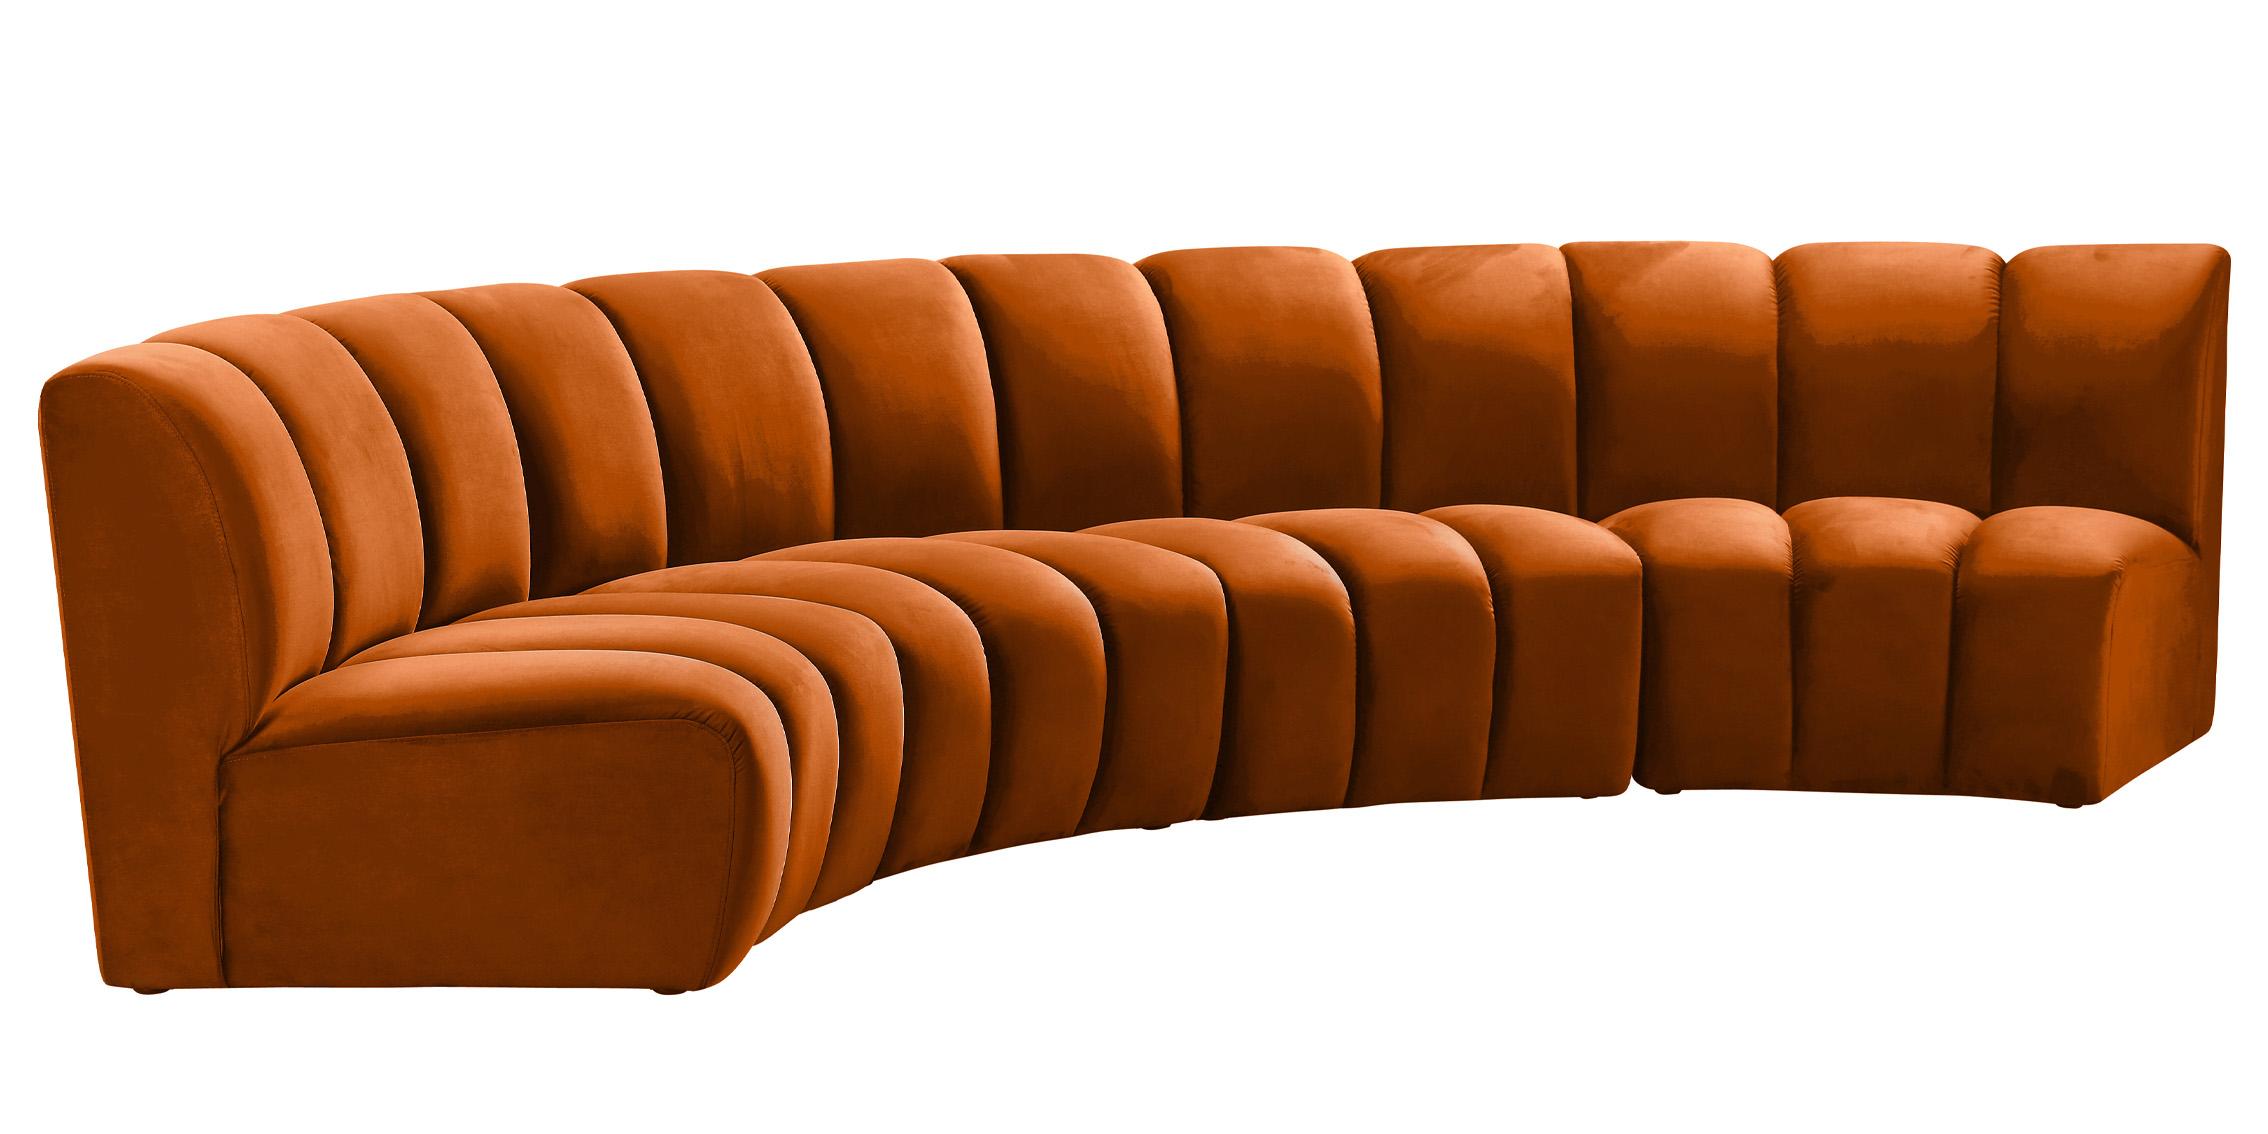 

    
Meridian Furniture INFINITY 638Cognac-4PC Modular Sectional Sofa Cognac 638Cognac-4PC
